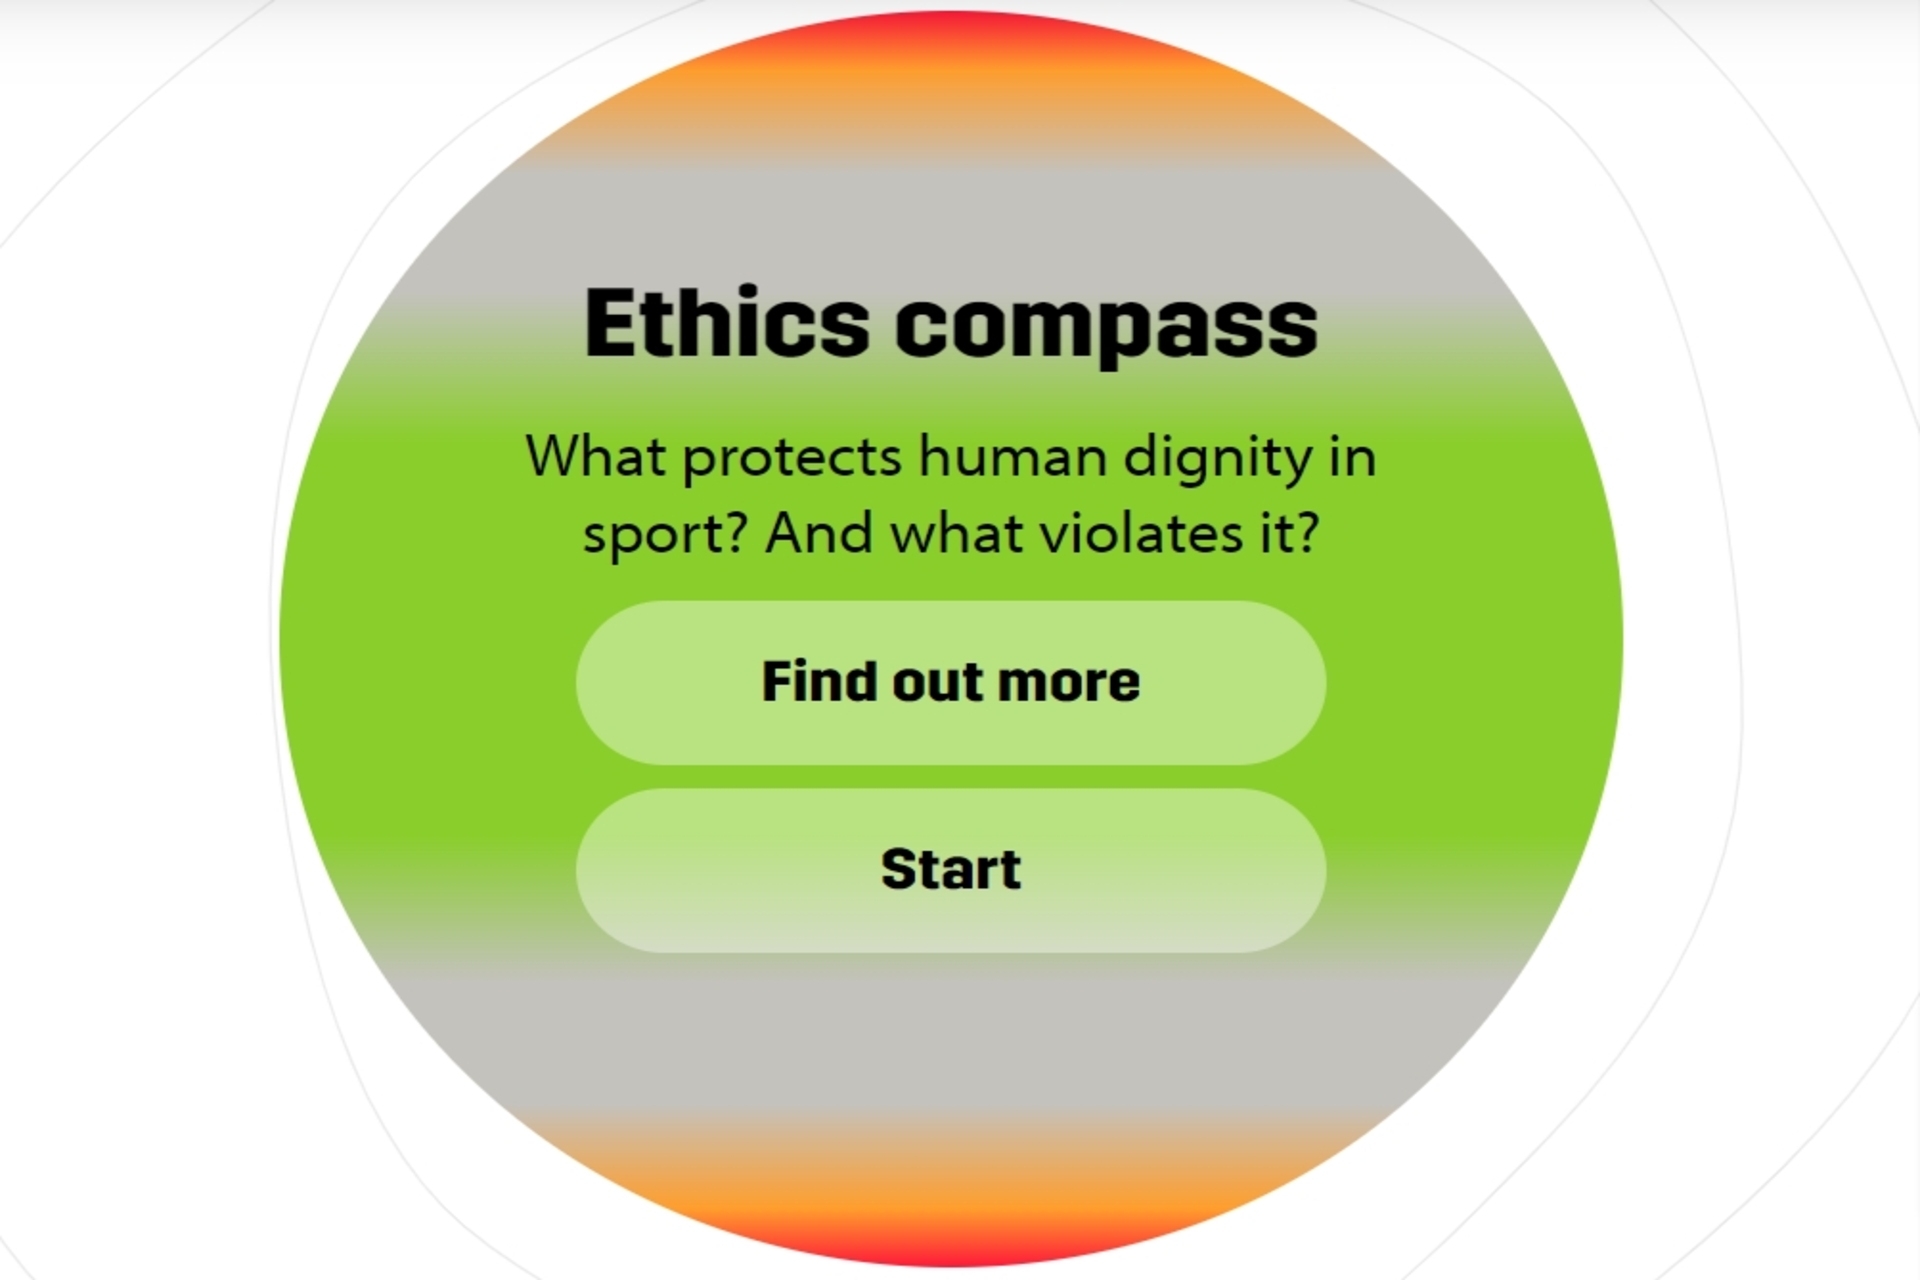 La bussola etica digitale è una pietra miliare del progetto 